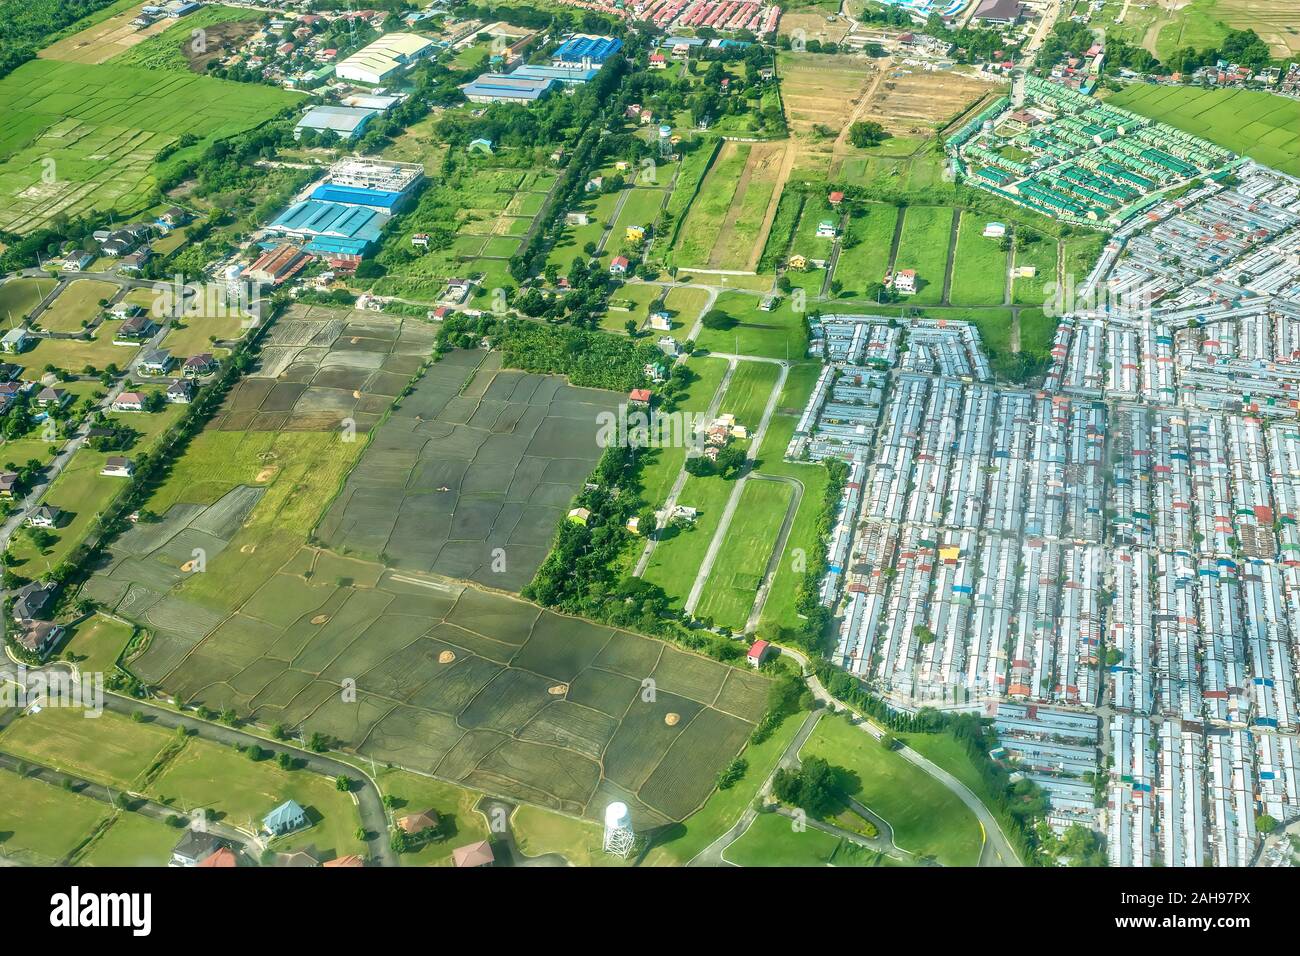 Luftbild mit dichten städtischen Erweiterung aufgrund der hohen Bevölkerungswachstum in landwirtschaftlichen Flächen auf der Insel Luzon auf den Philippinen. Stockfoto